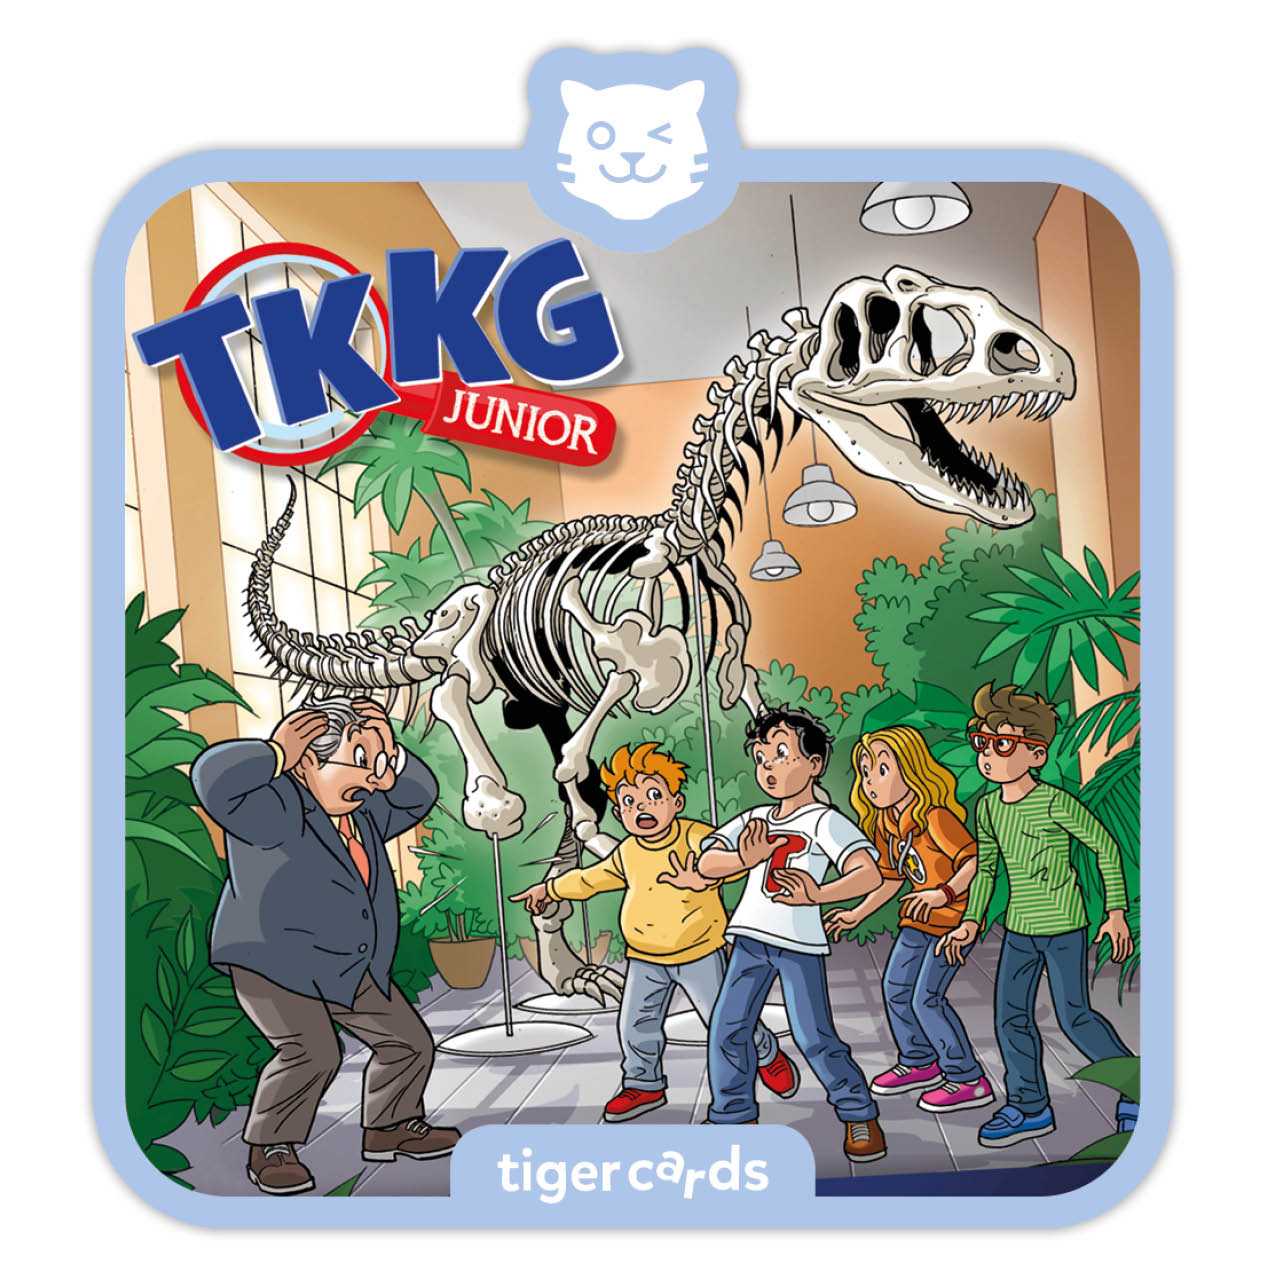 TKKG Dino-Diebe als Tigercard